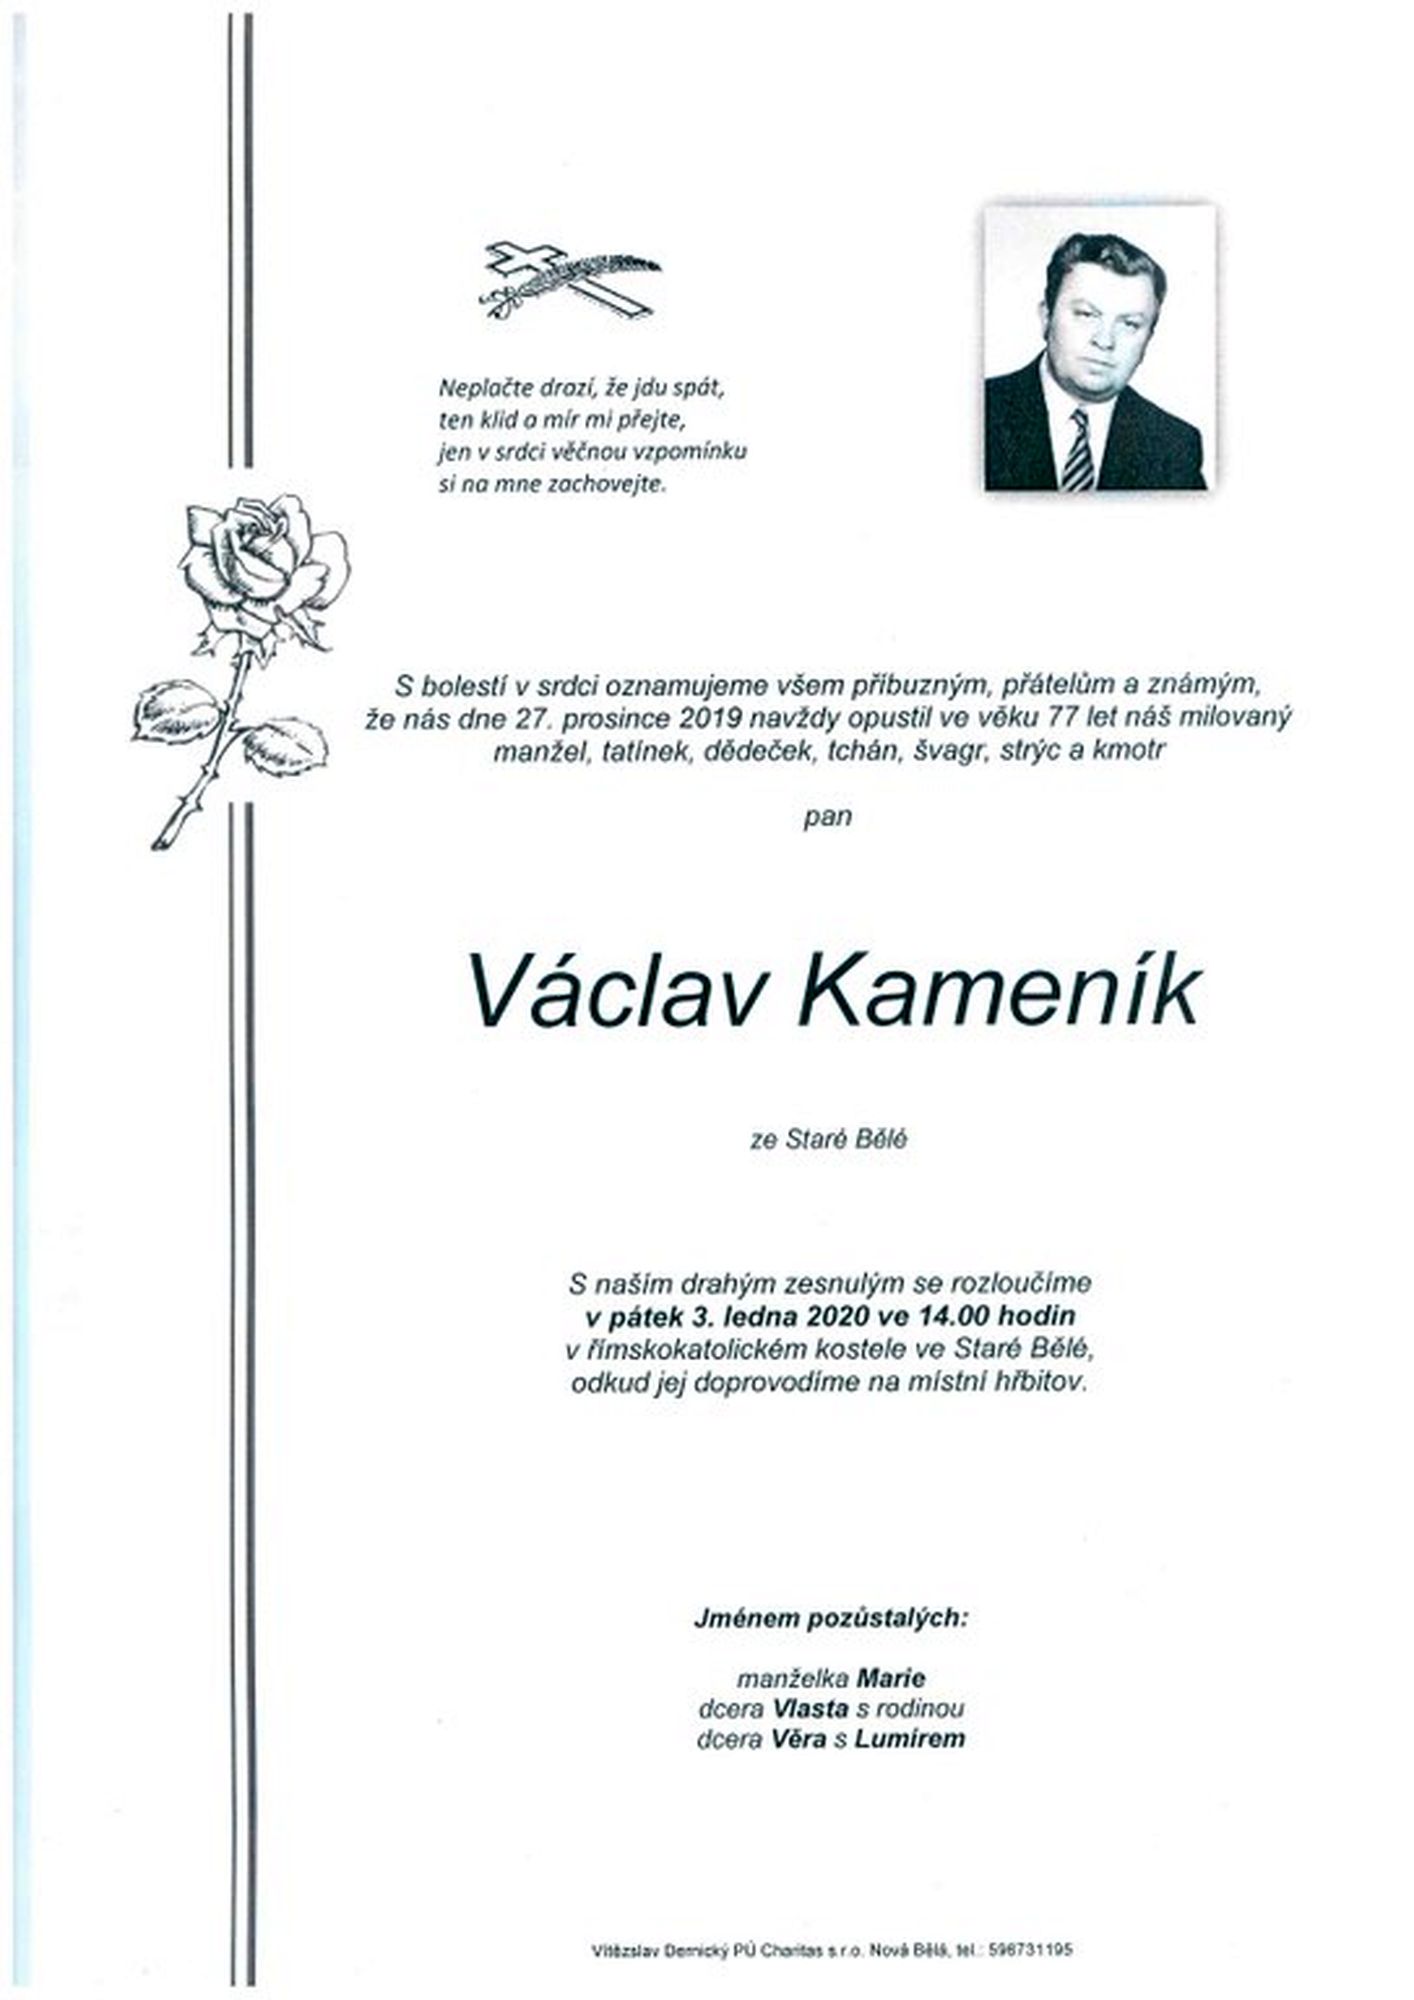 Václav Kameník